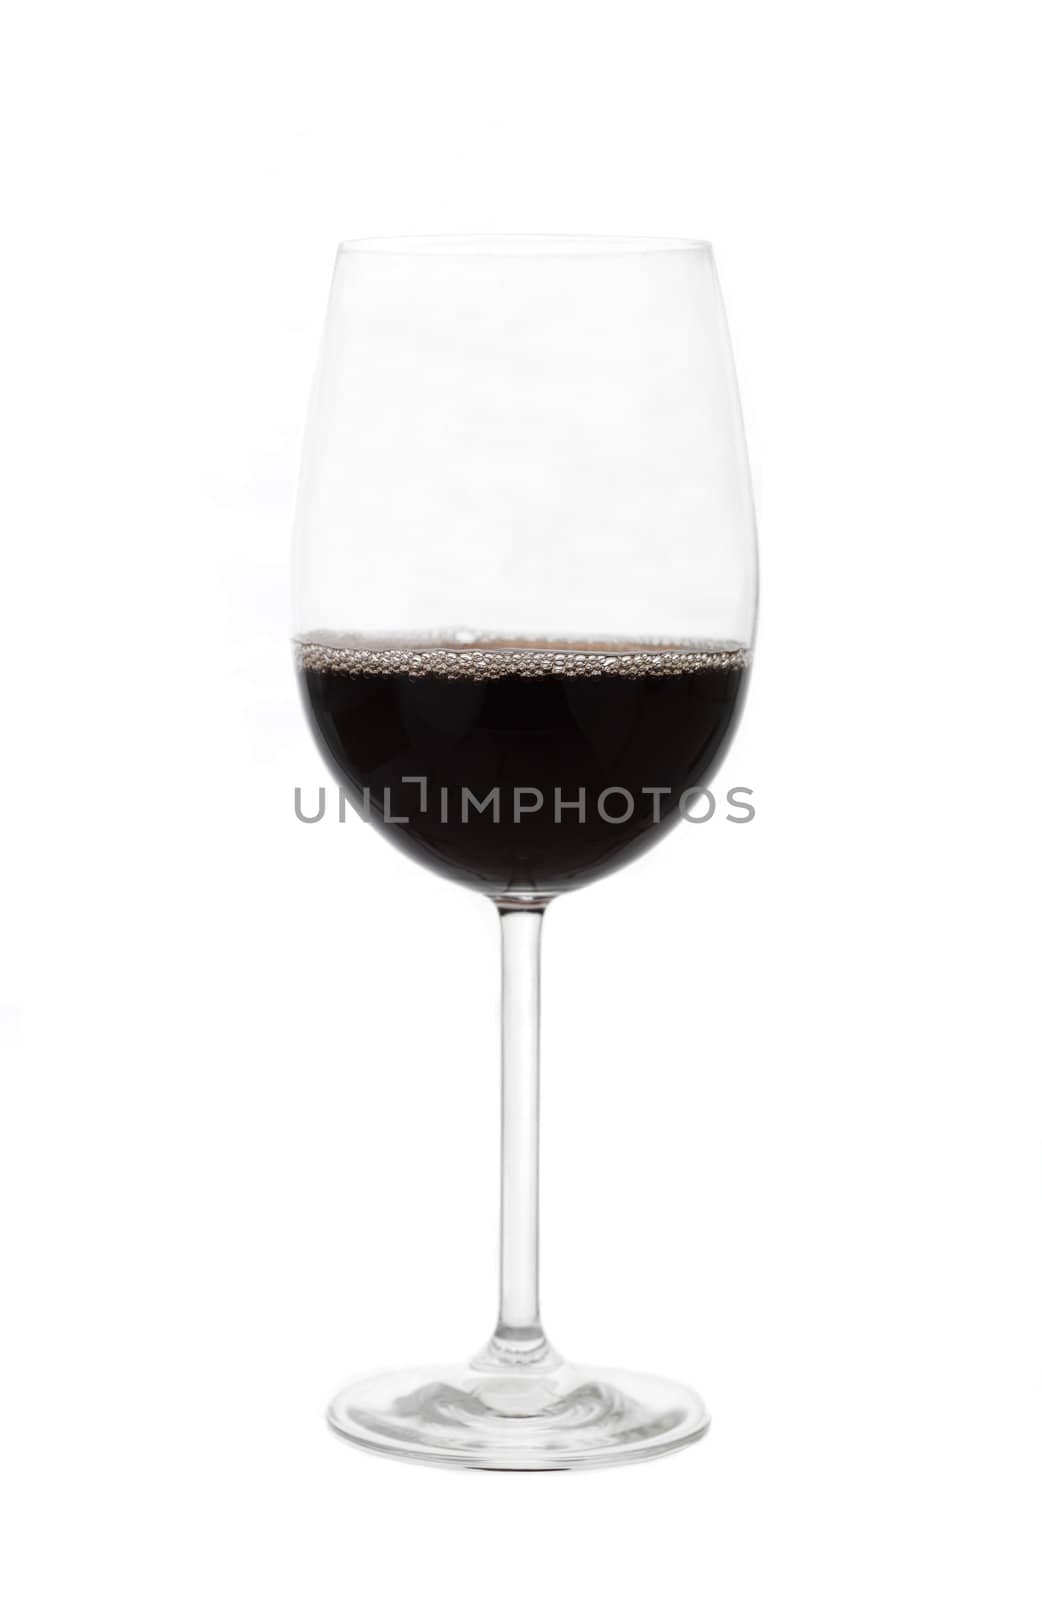 glass of wine by gemenacom